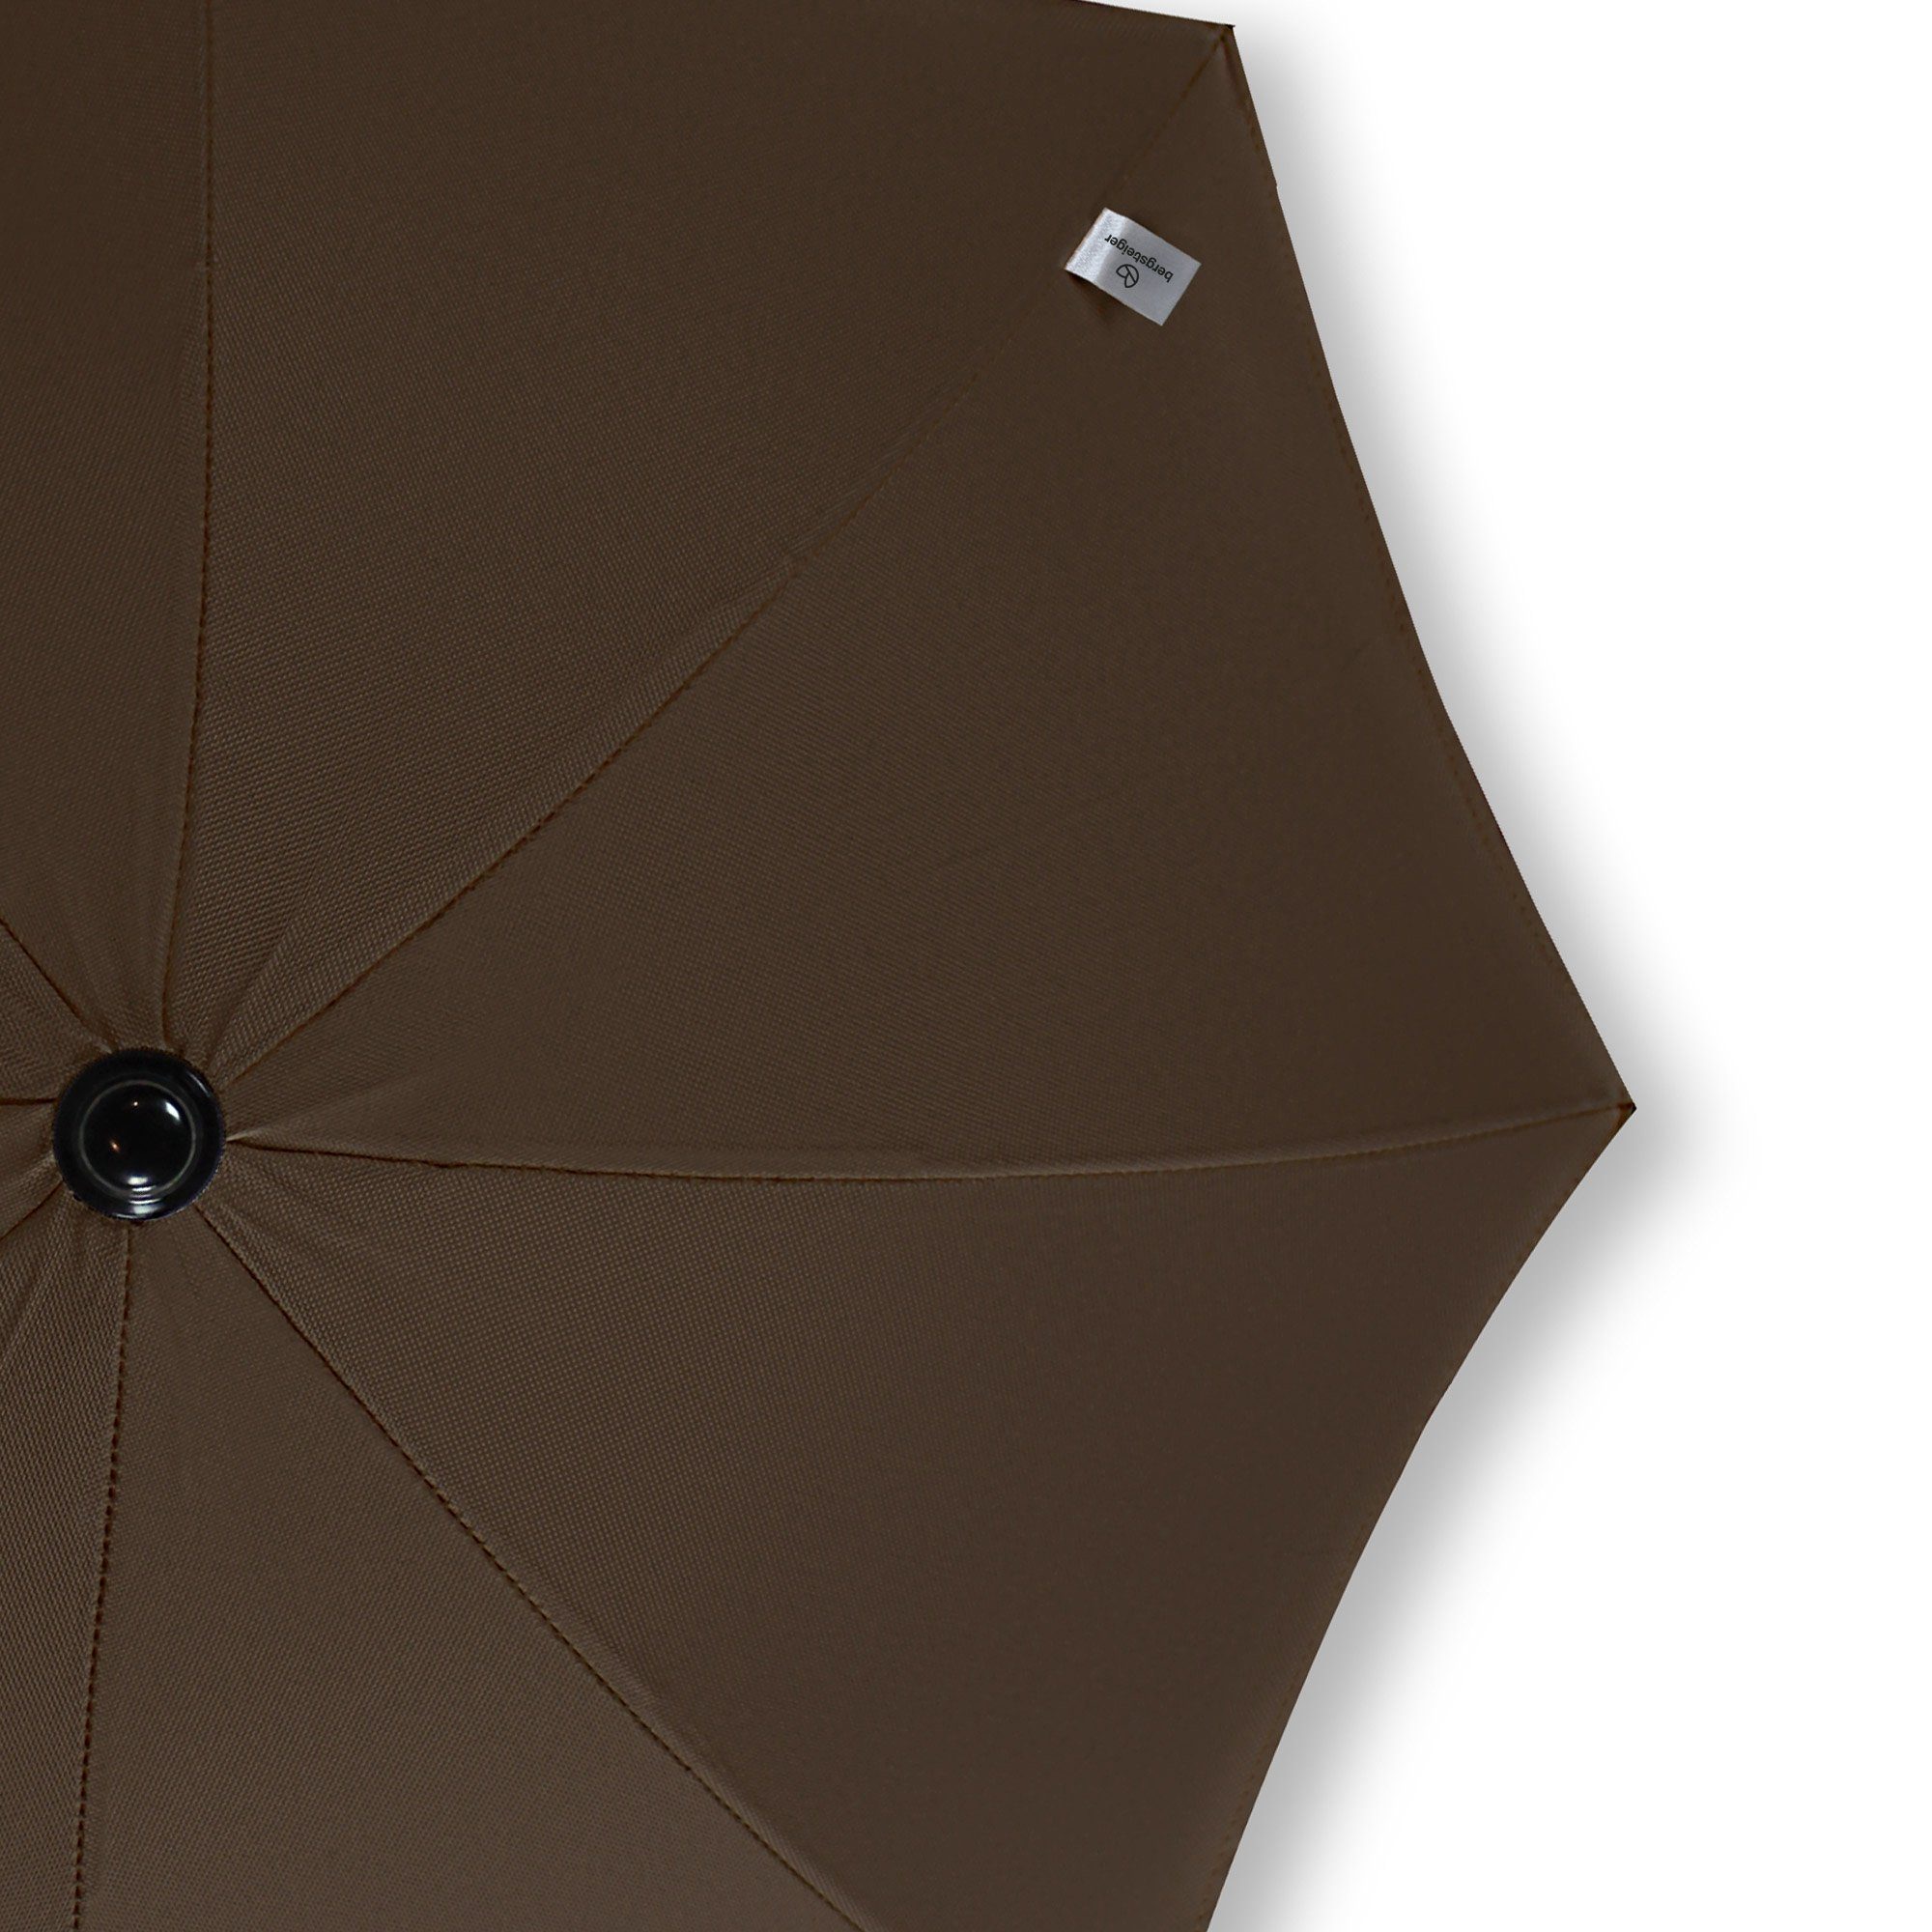 für Buggy, & chocolate Kinderwagenschirm 50+ Sonnenschutz Sonnenschirm UV Schirm, bergsteiger Kinderwagen